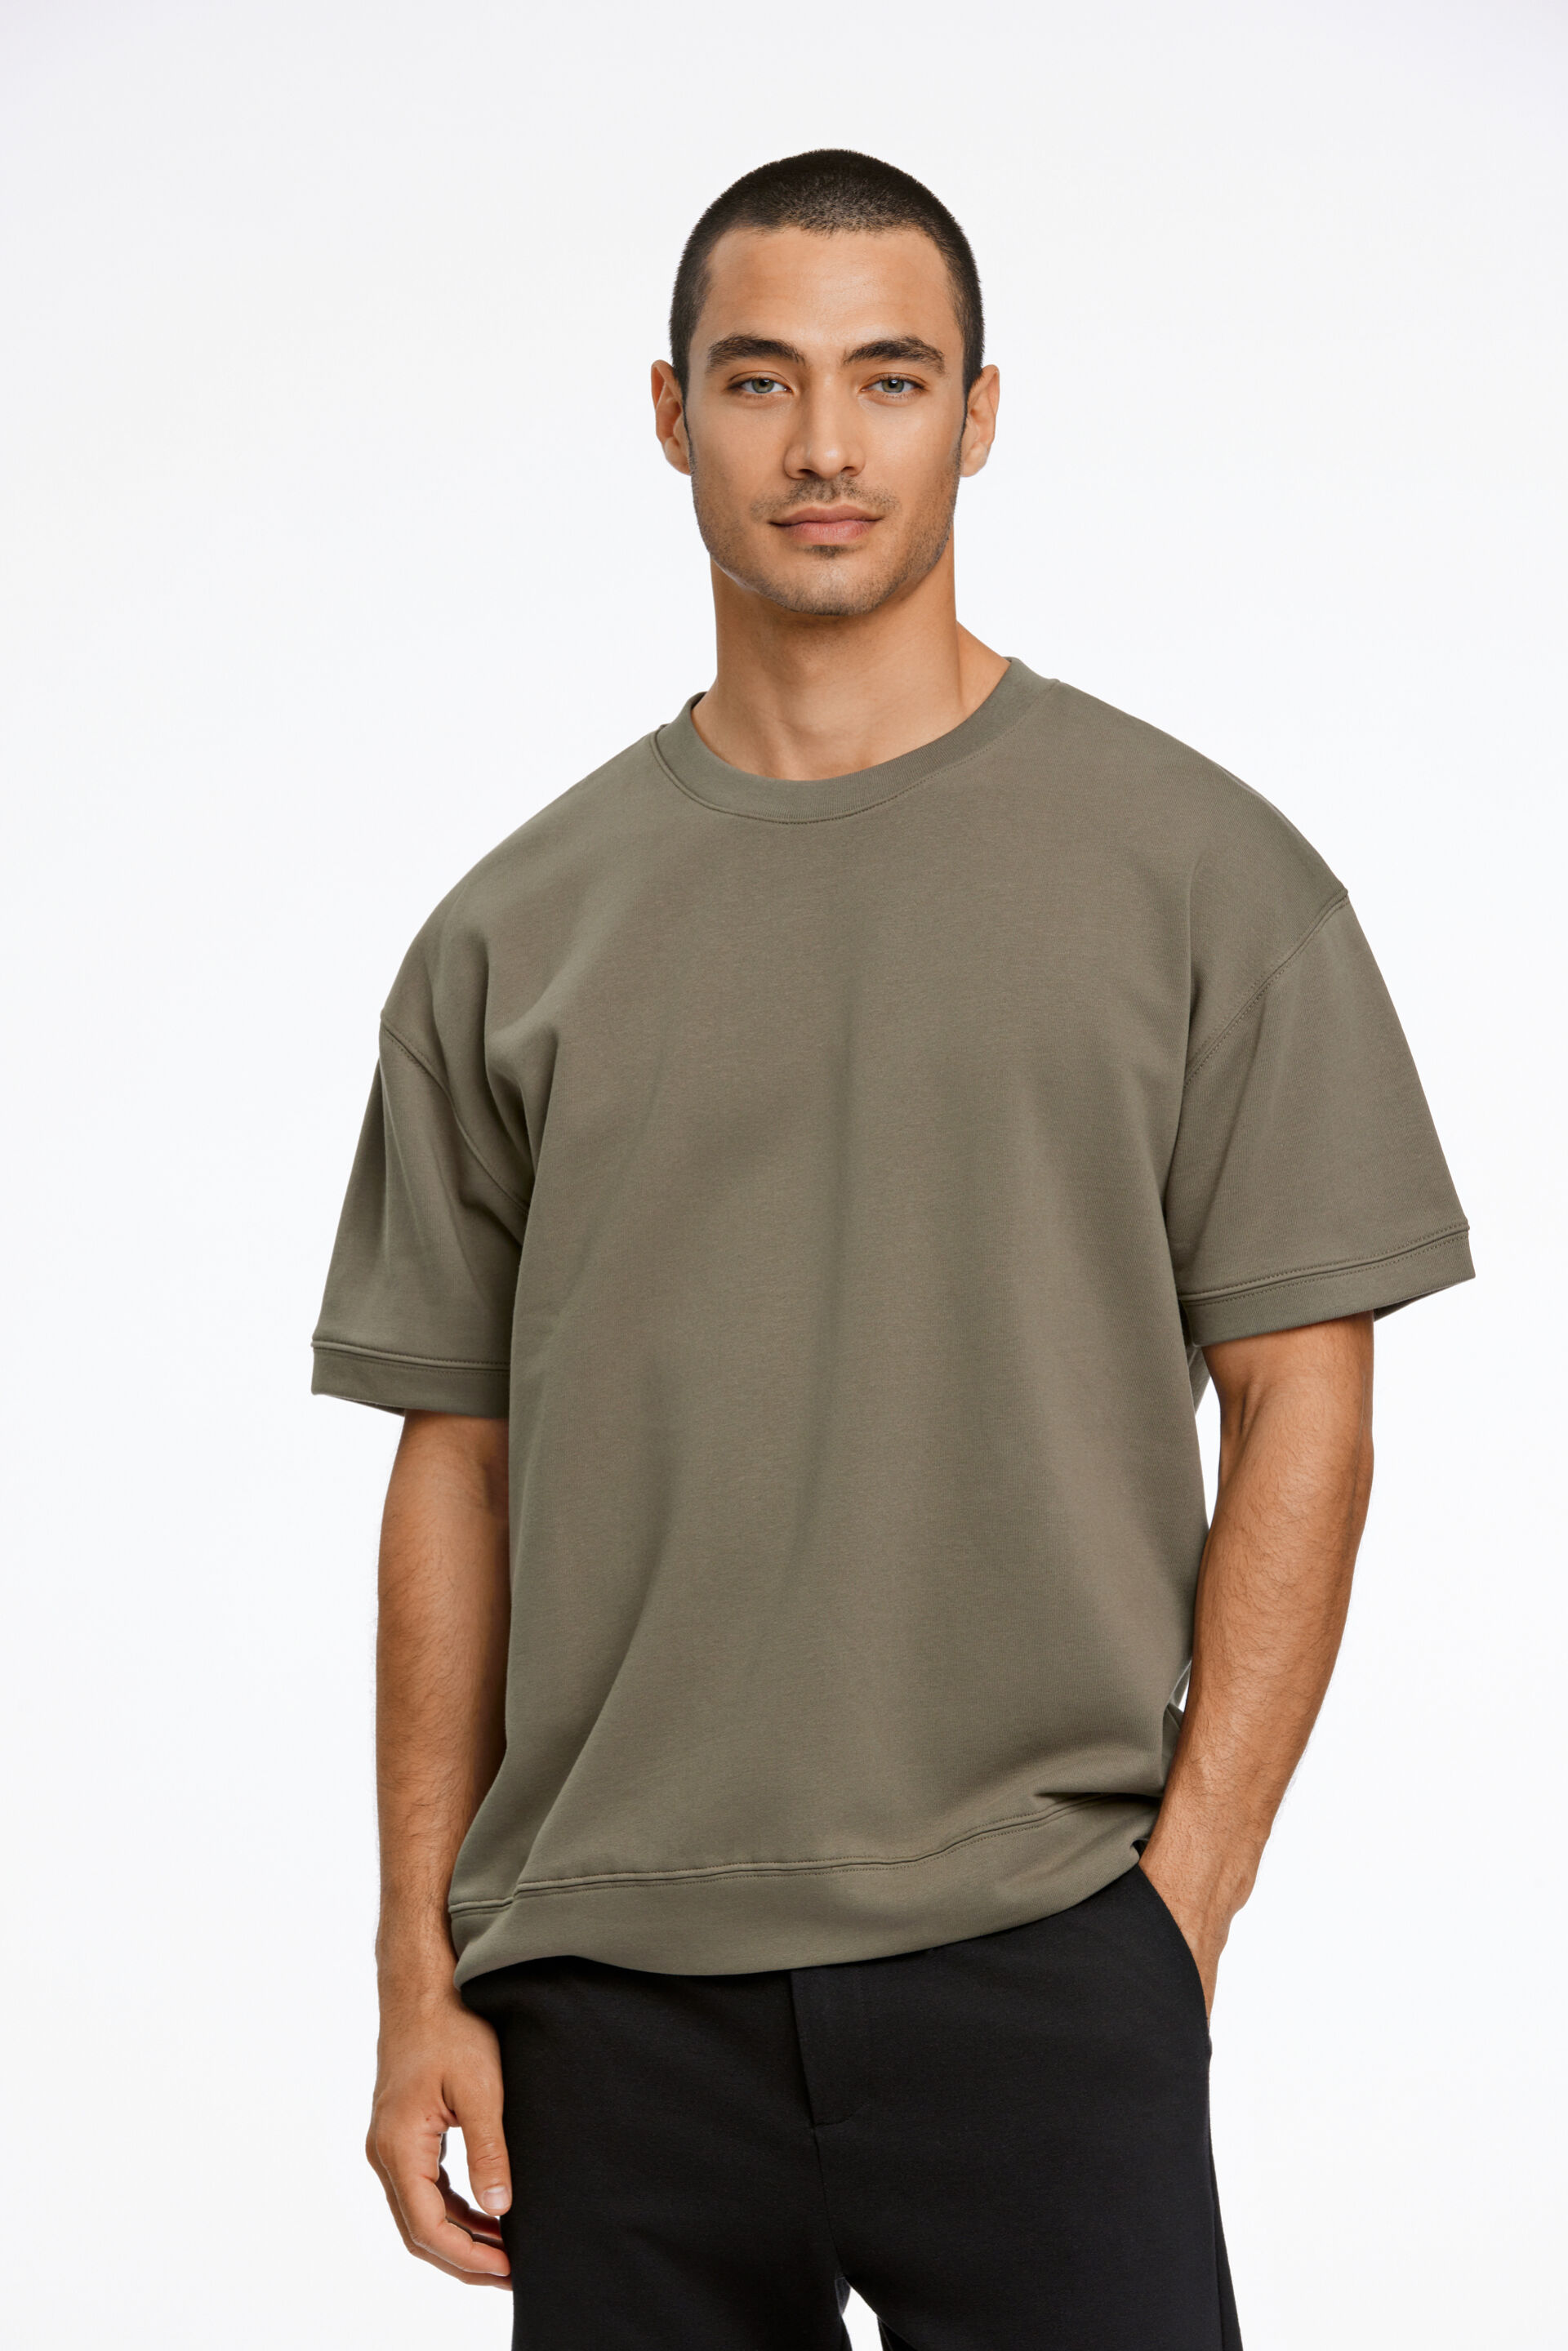 T-shirt T-shirt Grön 30-705150